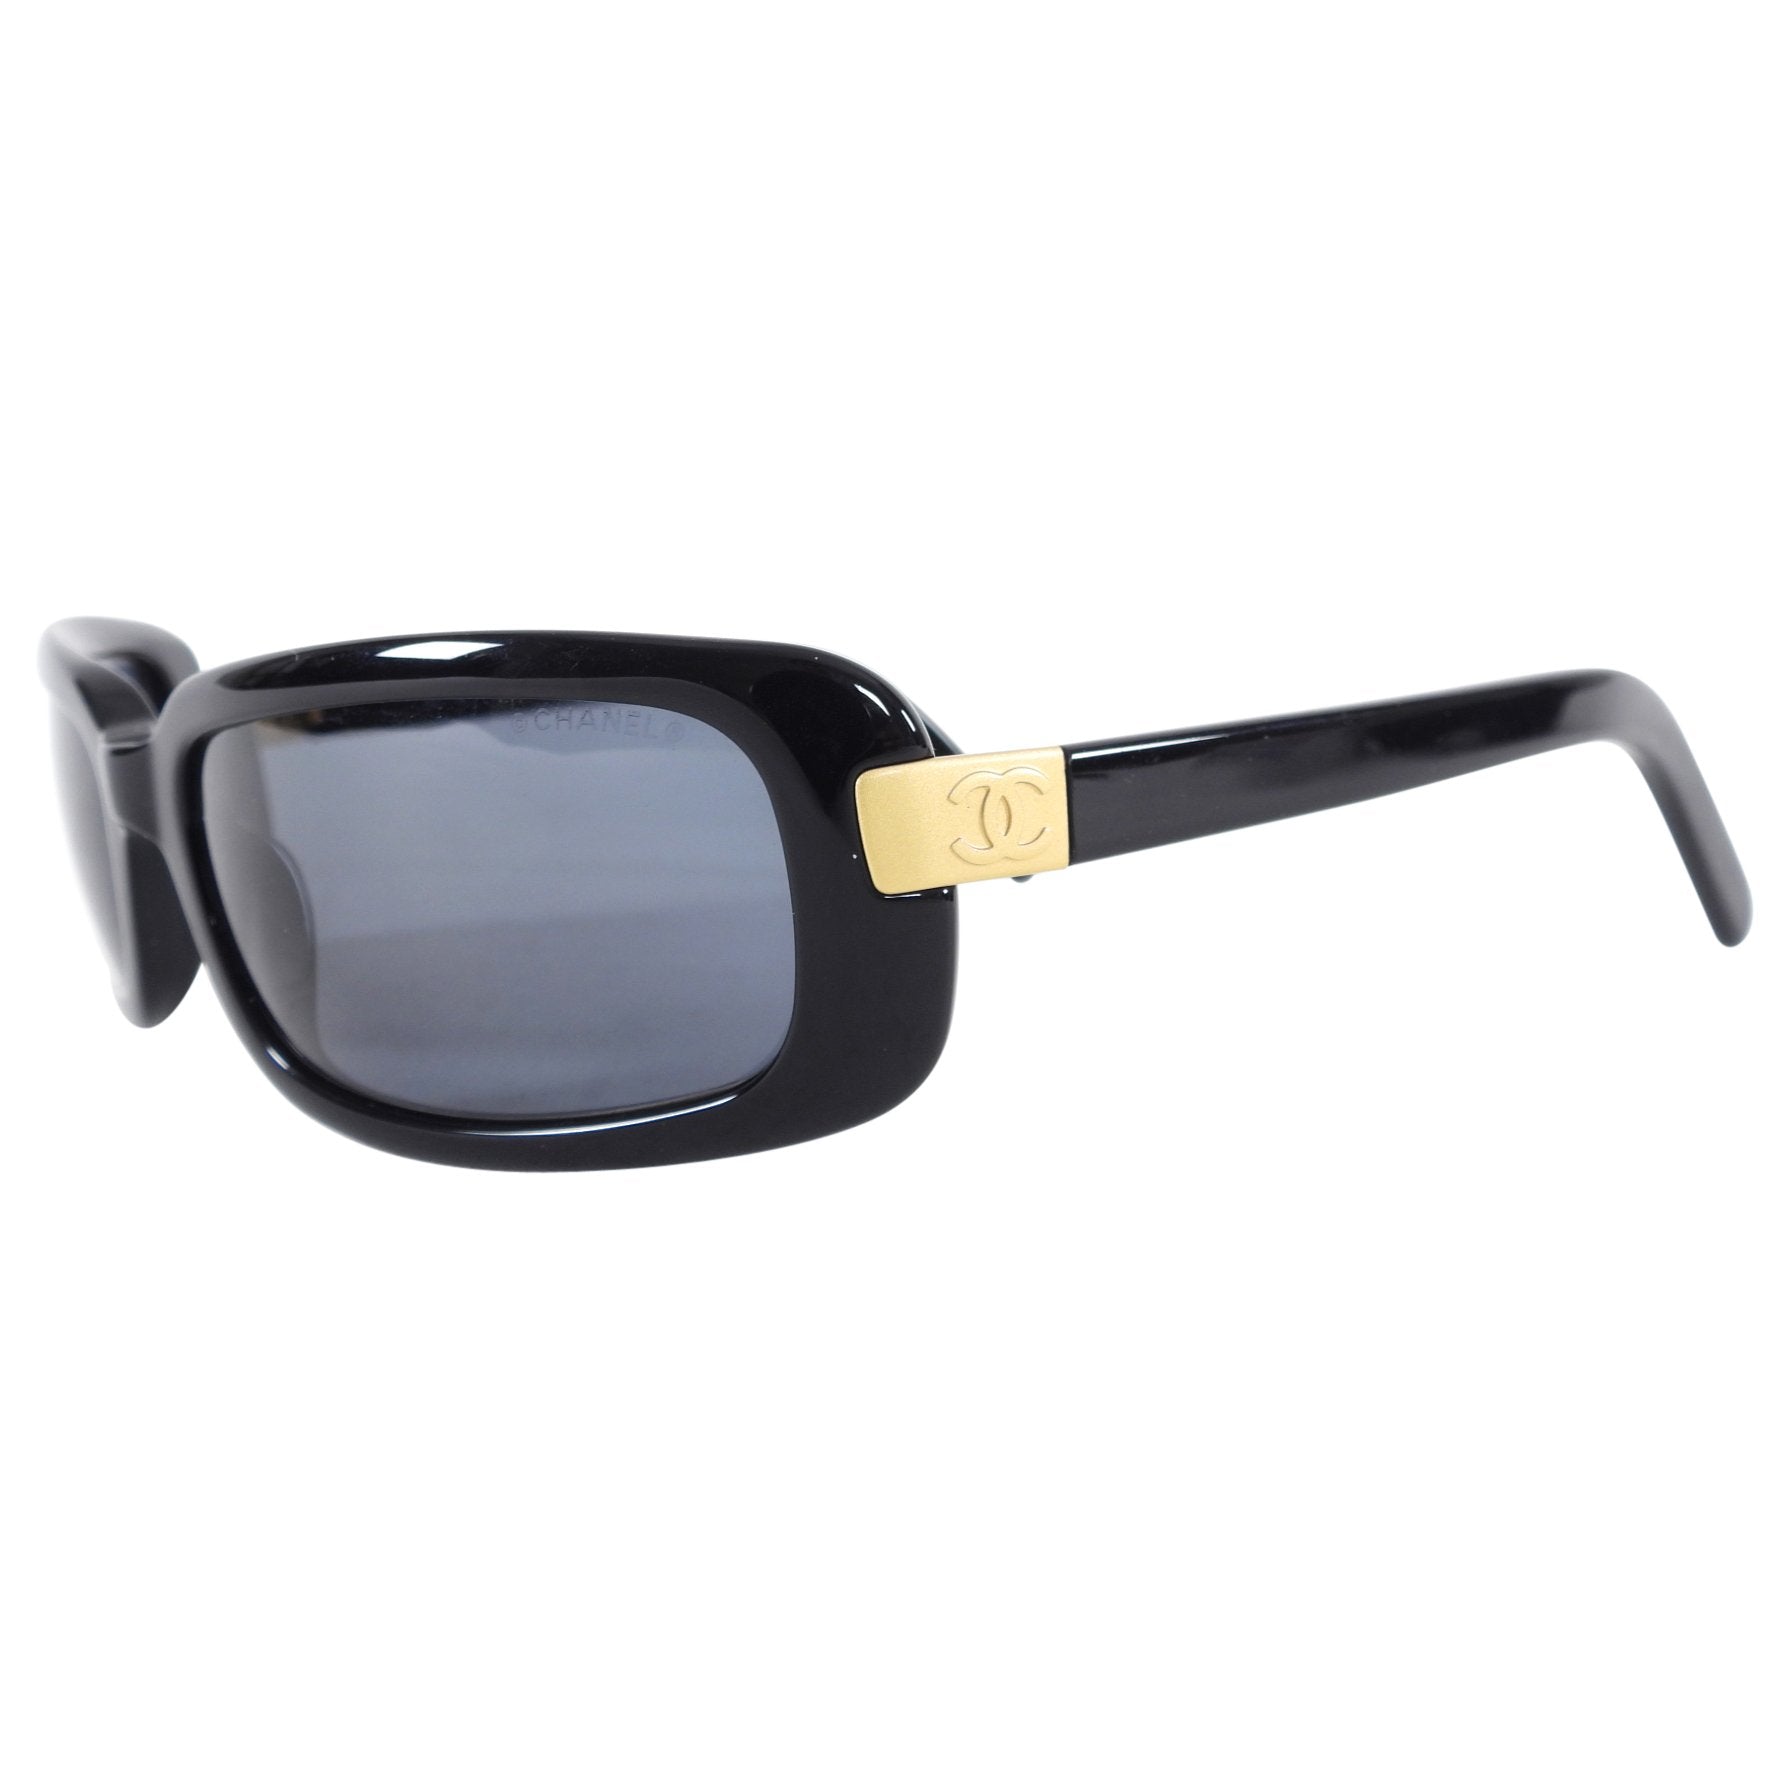 CHANEL sunglasses, vintage model 5036. Black frame - Depop